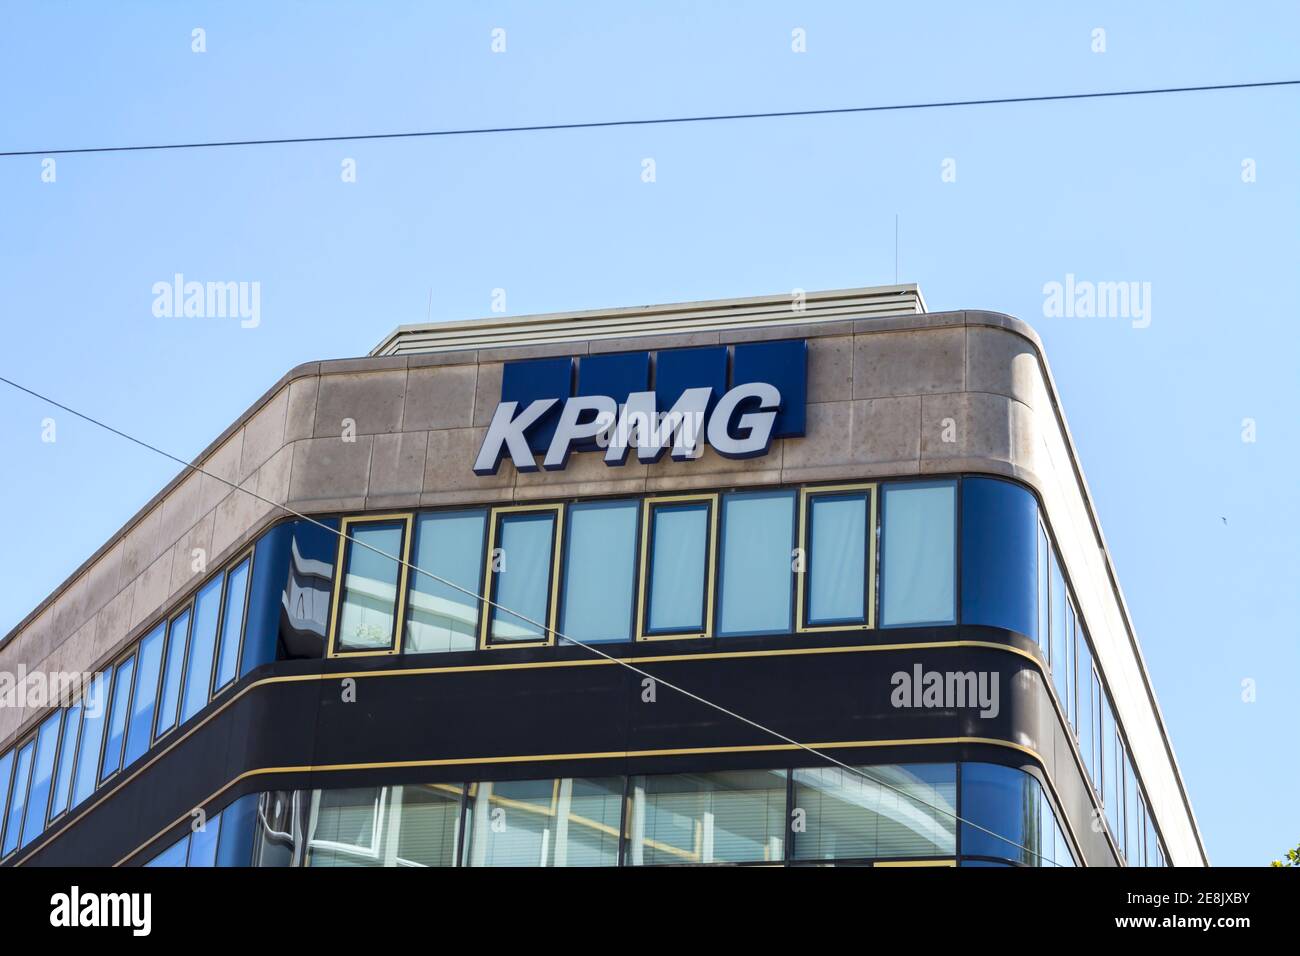 Zeichen der Firma KPMG in der Karlsruher Innenstadt. KPMG ist ein professionelles Dienstleistungsunternehmen und einer der Big Four Auditoren mit Sitz in den Niederlanden. Stockfoto